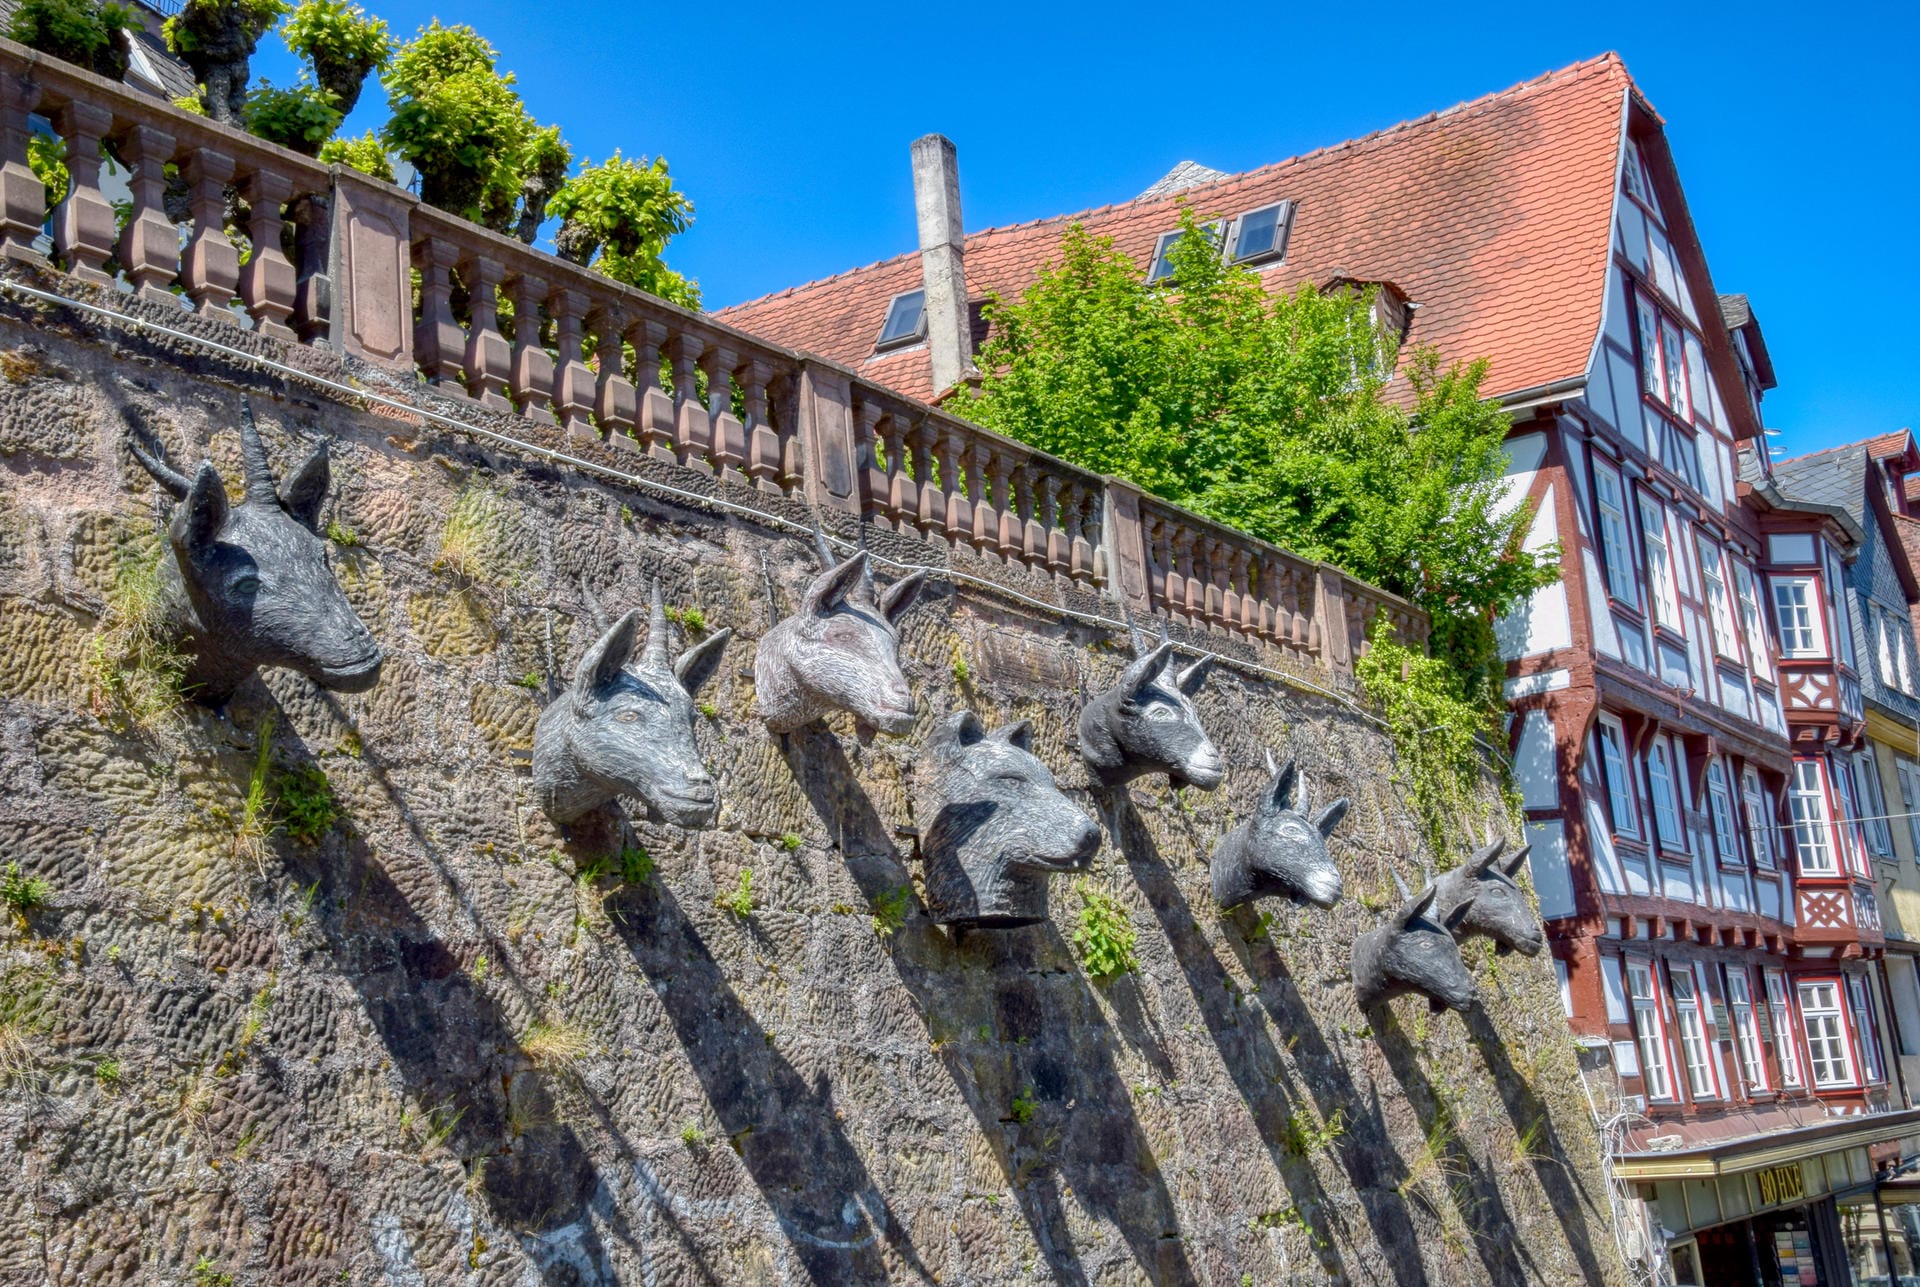 «Grimm-Dich-Pfad»: Er lockt mit zehn Märchenfiguren an Häusern, Treppen und Mauern.